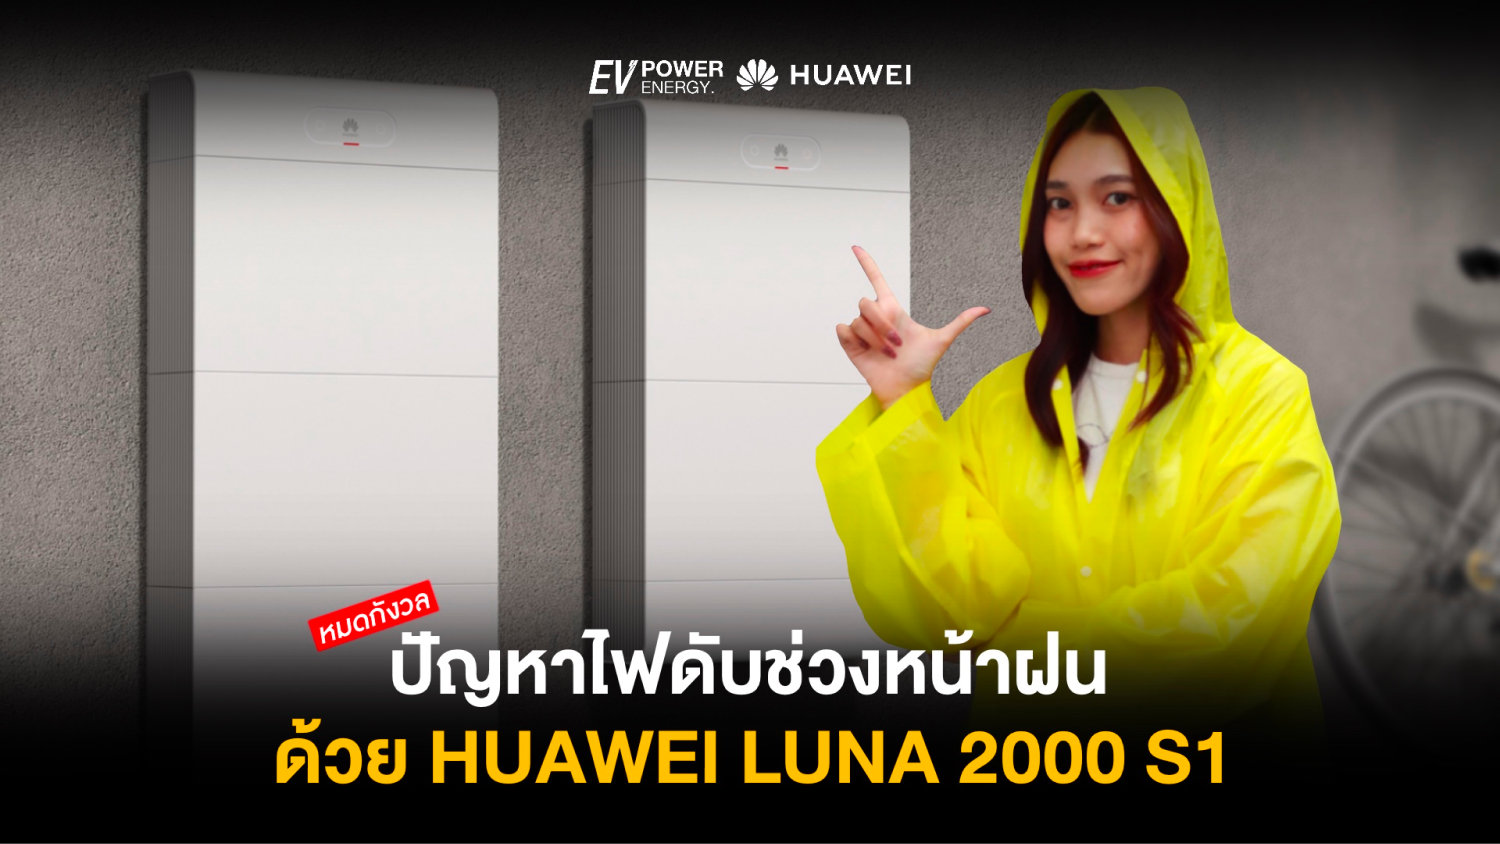 หมดกังวลปัญหาไฟดับ ช่วงหน้าฝน ด้วย Huawei LUNA 2000 S1